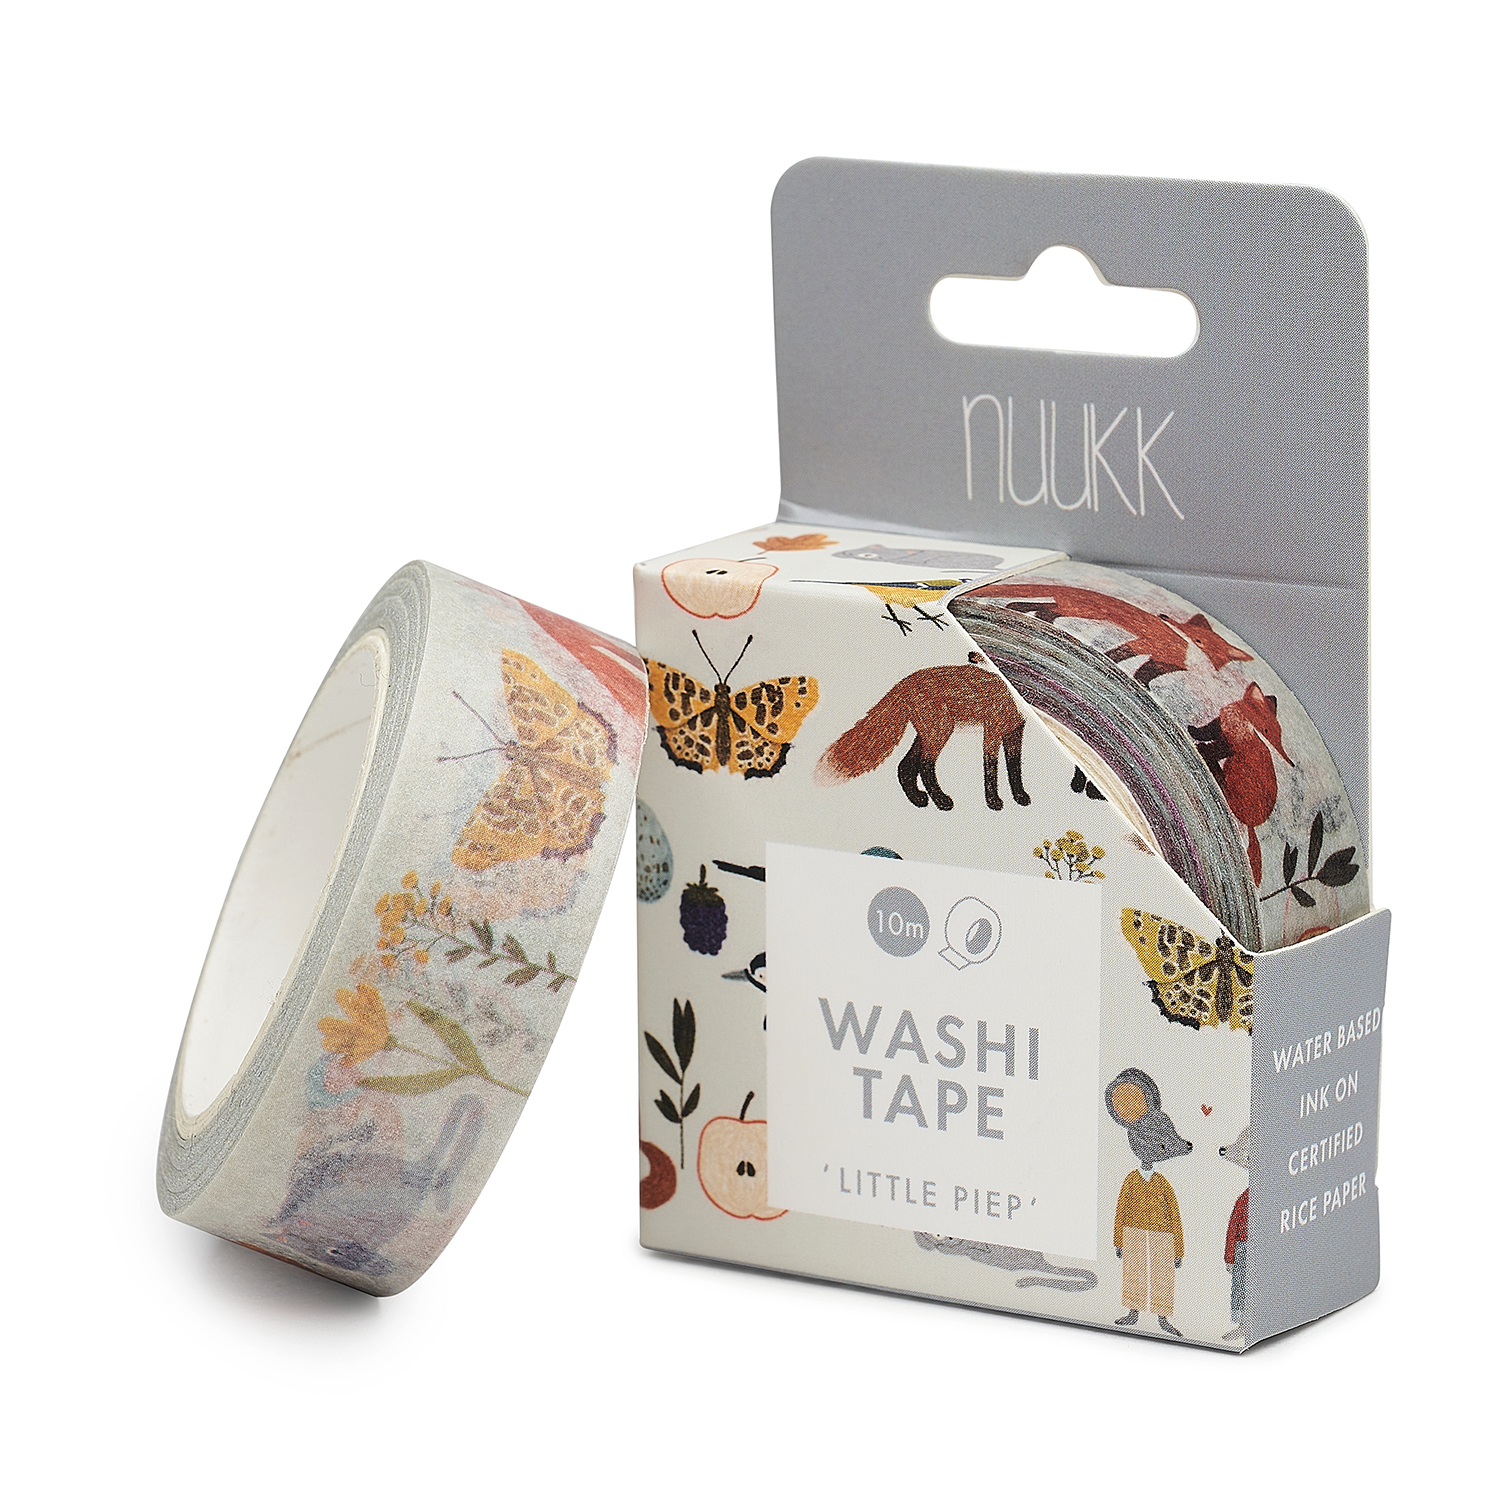 washi tape "little piep" von nuukk, motive: schmetterling, fuechse, maeuse, specht, masking tape